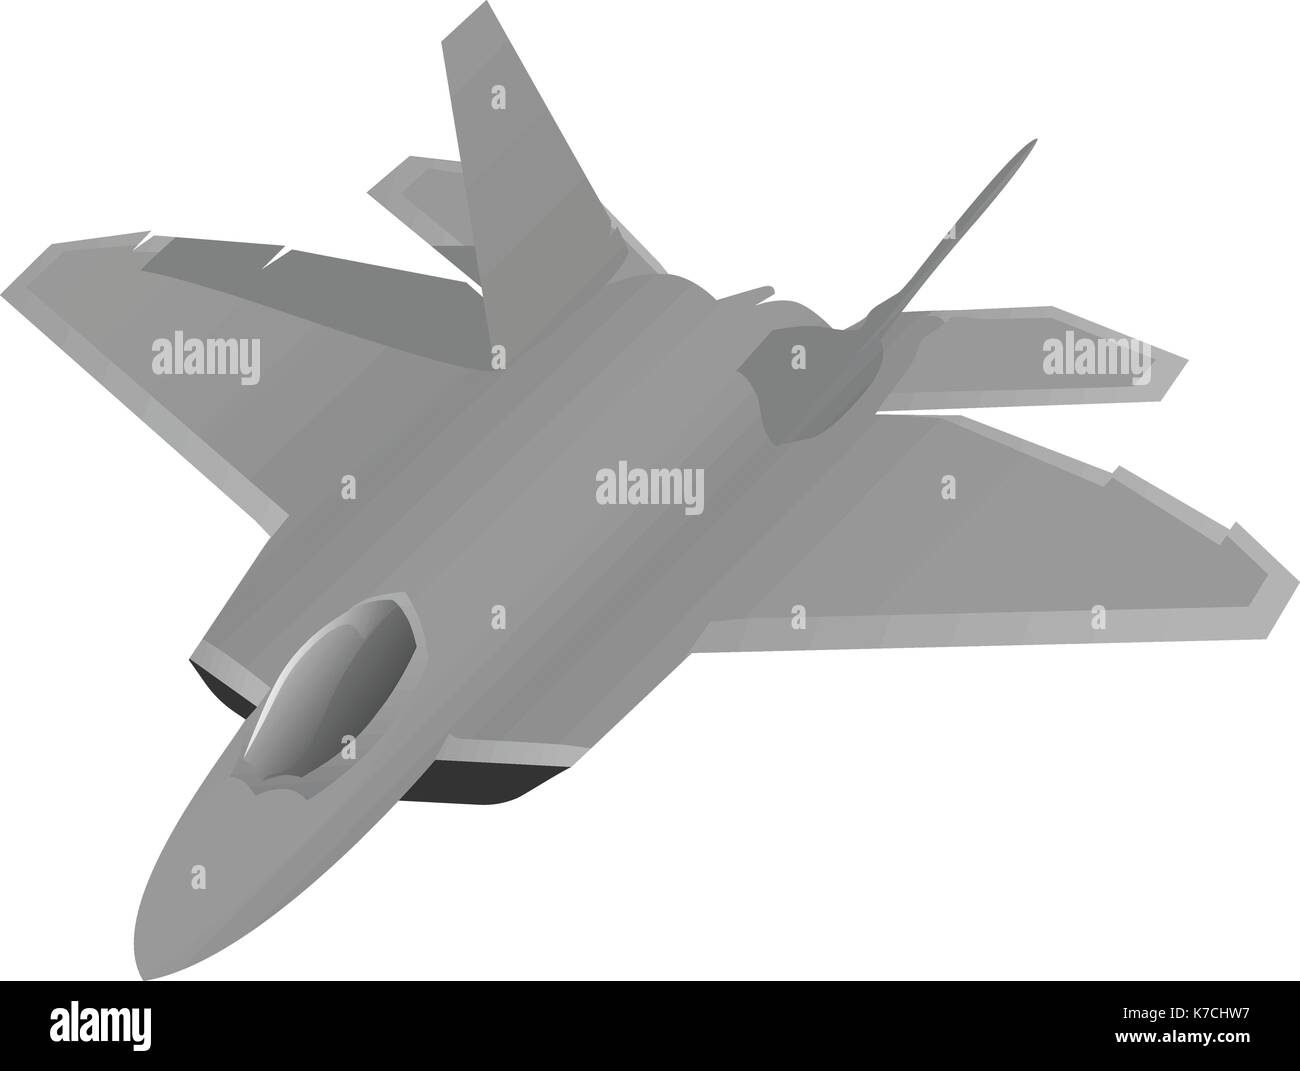 Moderne militärische Advanced fighter Jet fliegen hoch, Vector Illustration, einfache saubere Grafik, glatte Farbverläufe, scharfe Flugzeug, isoliert Stock Vektor